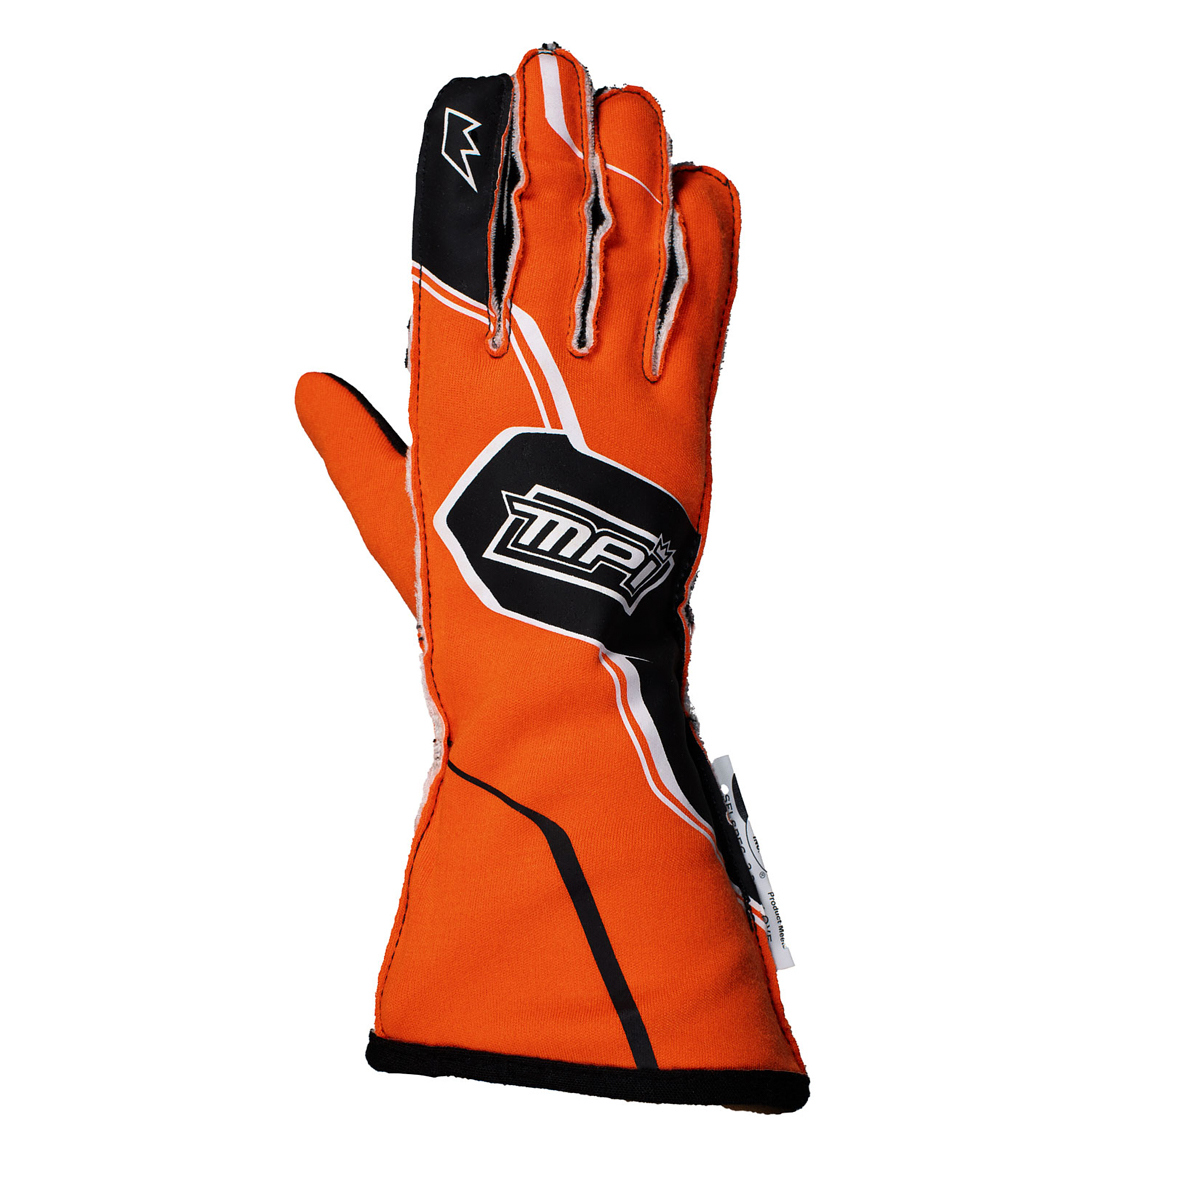 MPI USA MPI-GL-O-S - MPI Racing Gloves SFI 3.3/5 Orange Small